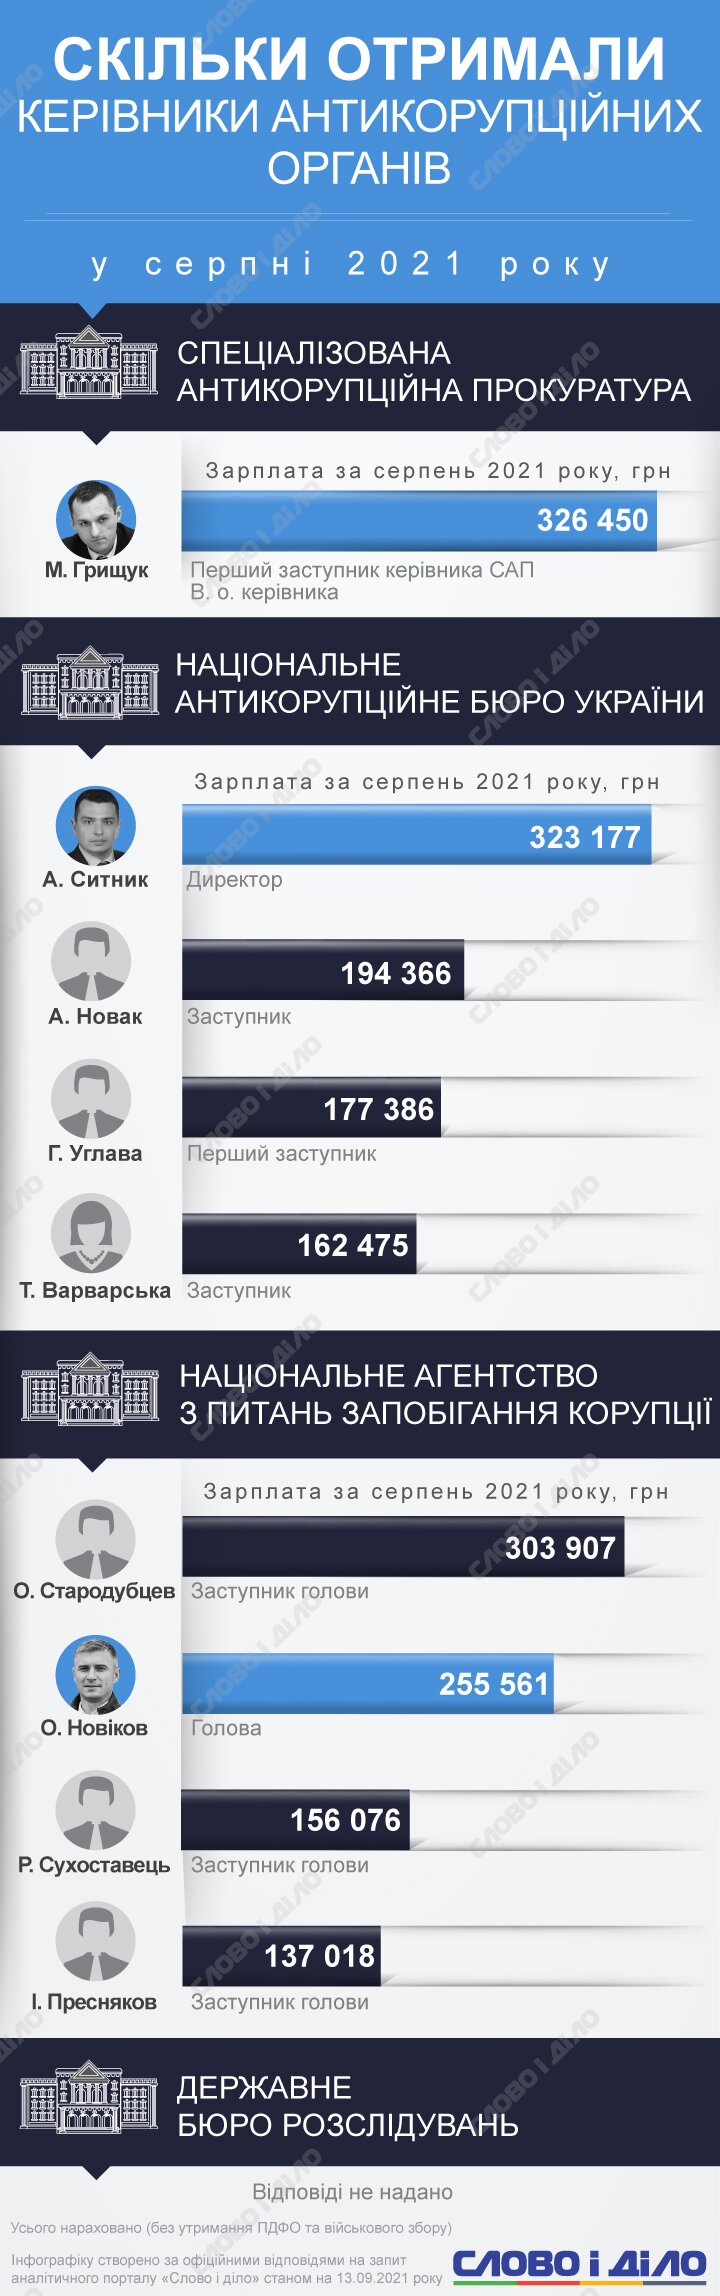 У в.о. керівника Спеціалізованої антикорупційної прокуратури Максима Грищука була найвища зарплата в серпні.